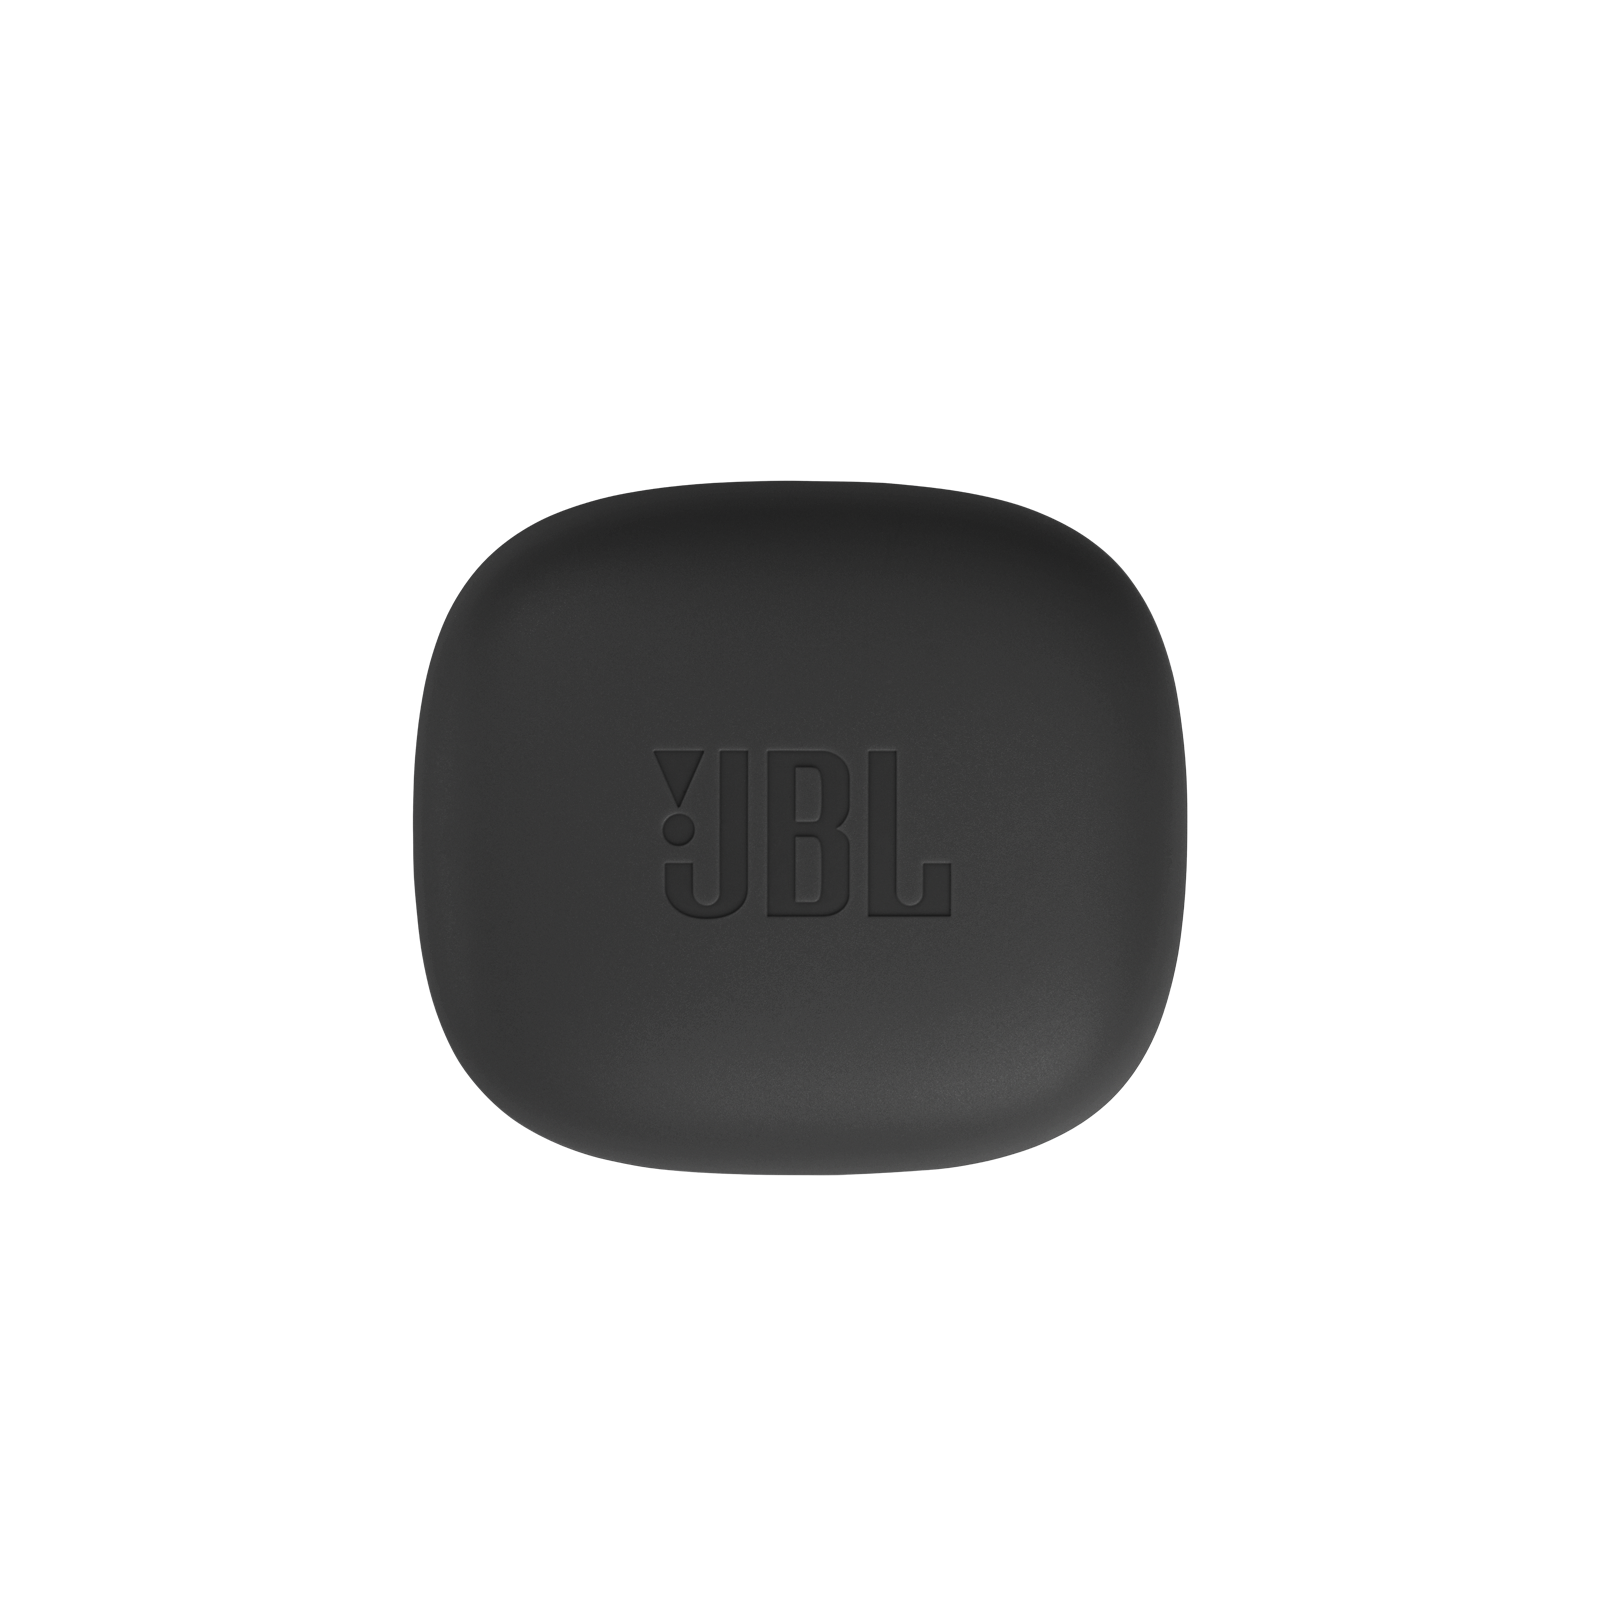 JBL Wave 300TWS - Black - True wireless earbuds - Detailshot 6